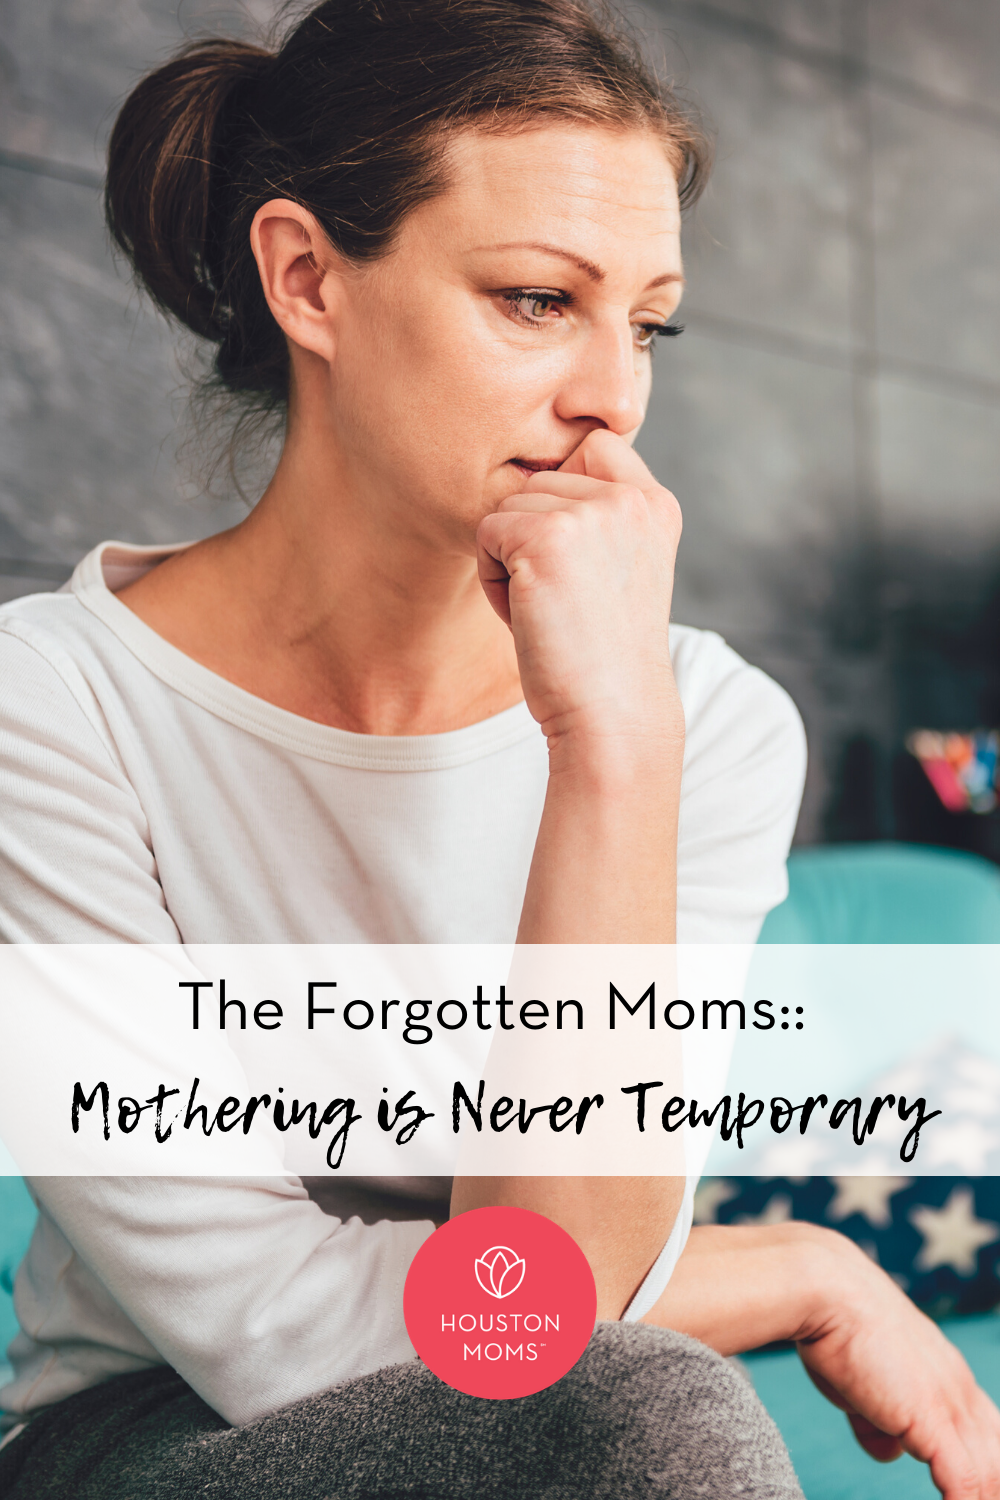 Houston Moms "The Forgotten Moms:: Mothering is Never Temporary" #houstonmomsblog #houstonmoms #momsaroundhouston